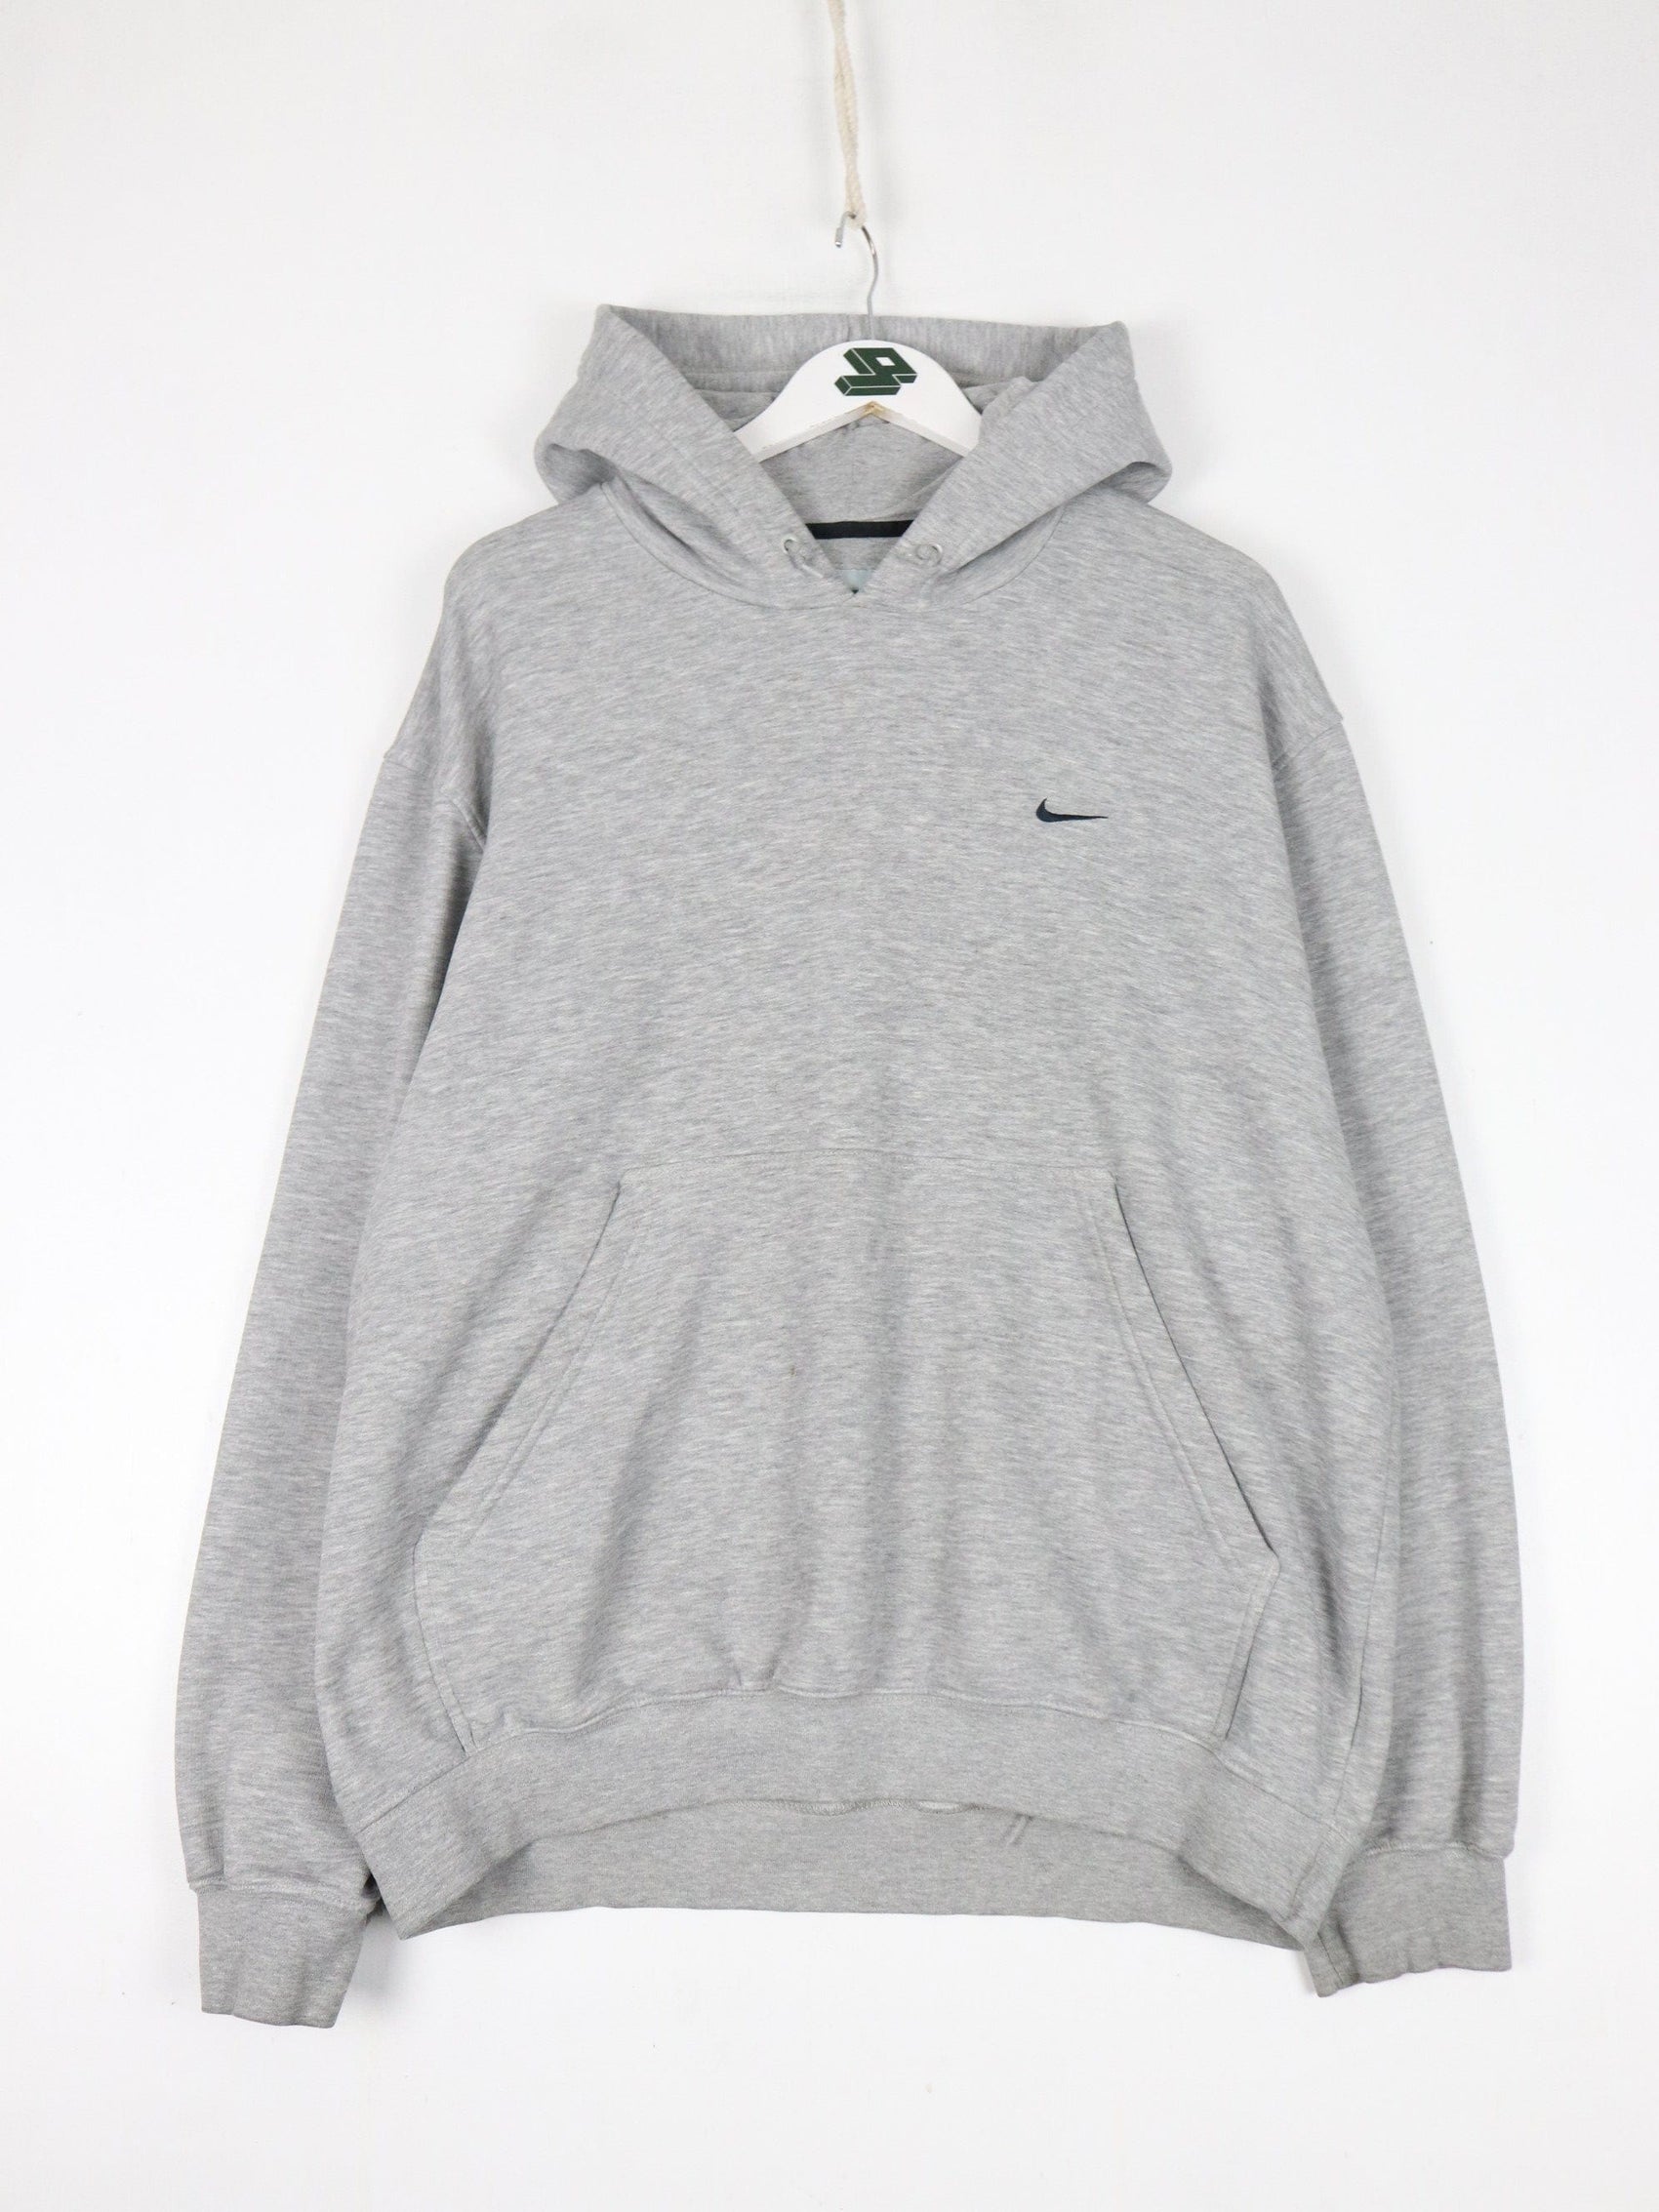 Nike Sweatshirts & Hoodies Vintage Nike Sweatshirt Fits Mens XL Grey Swoosh Hoodie